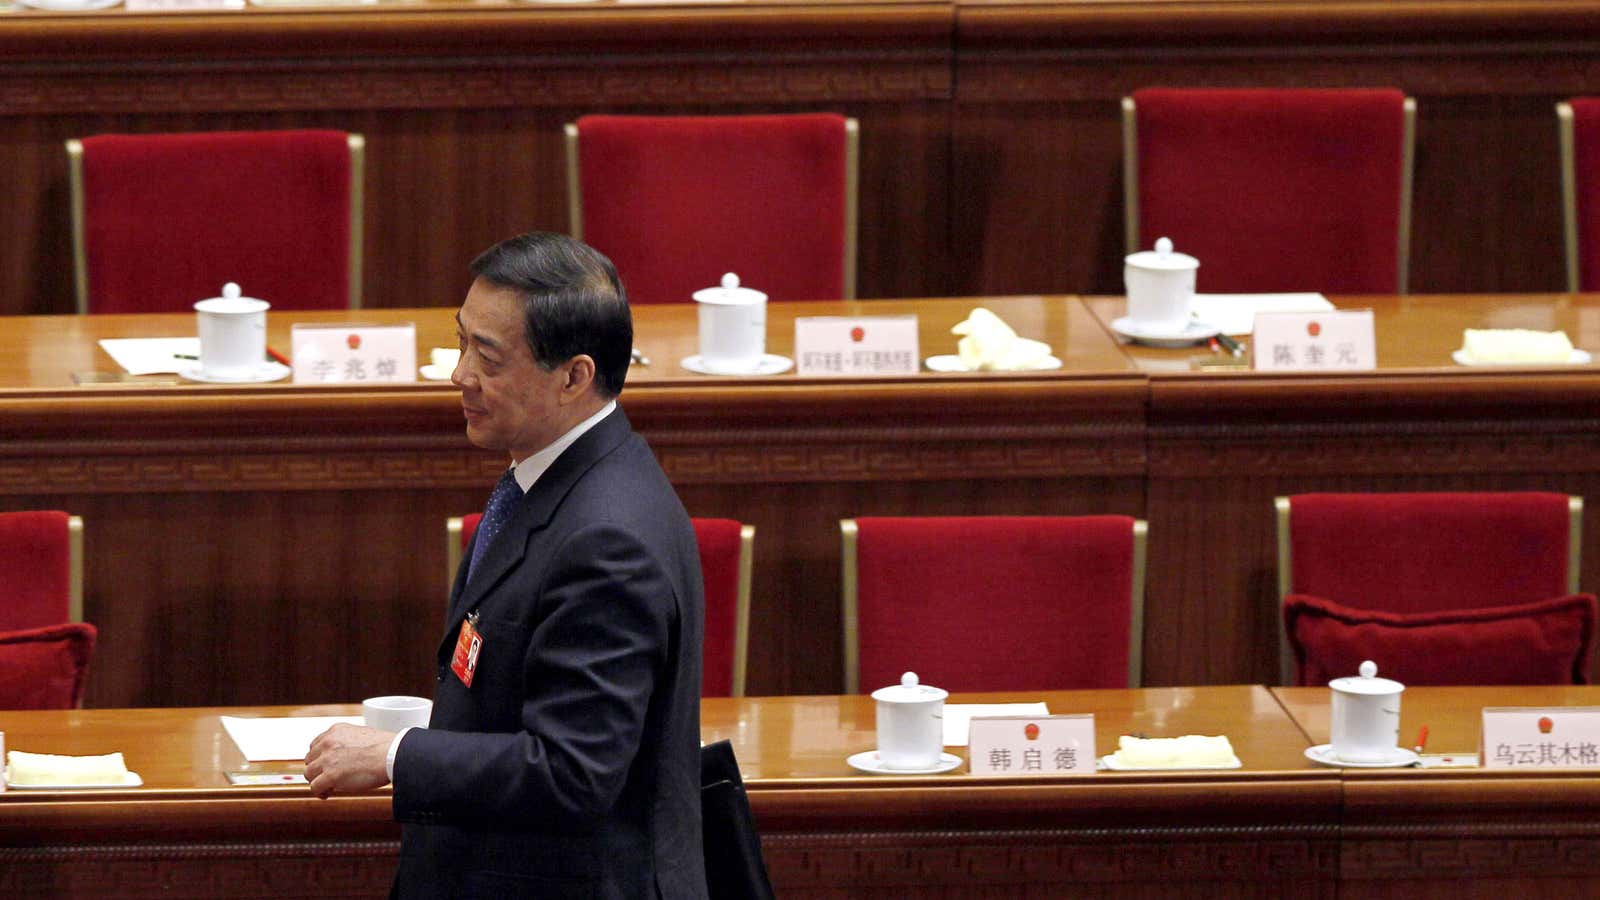 Bo Xilai in March 2012